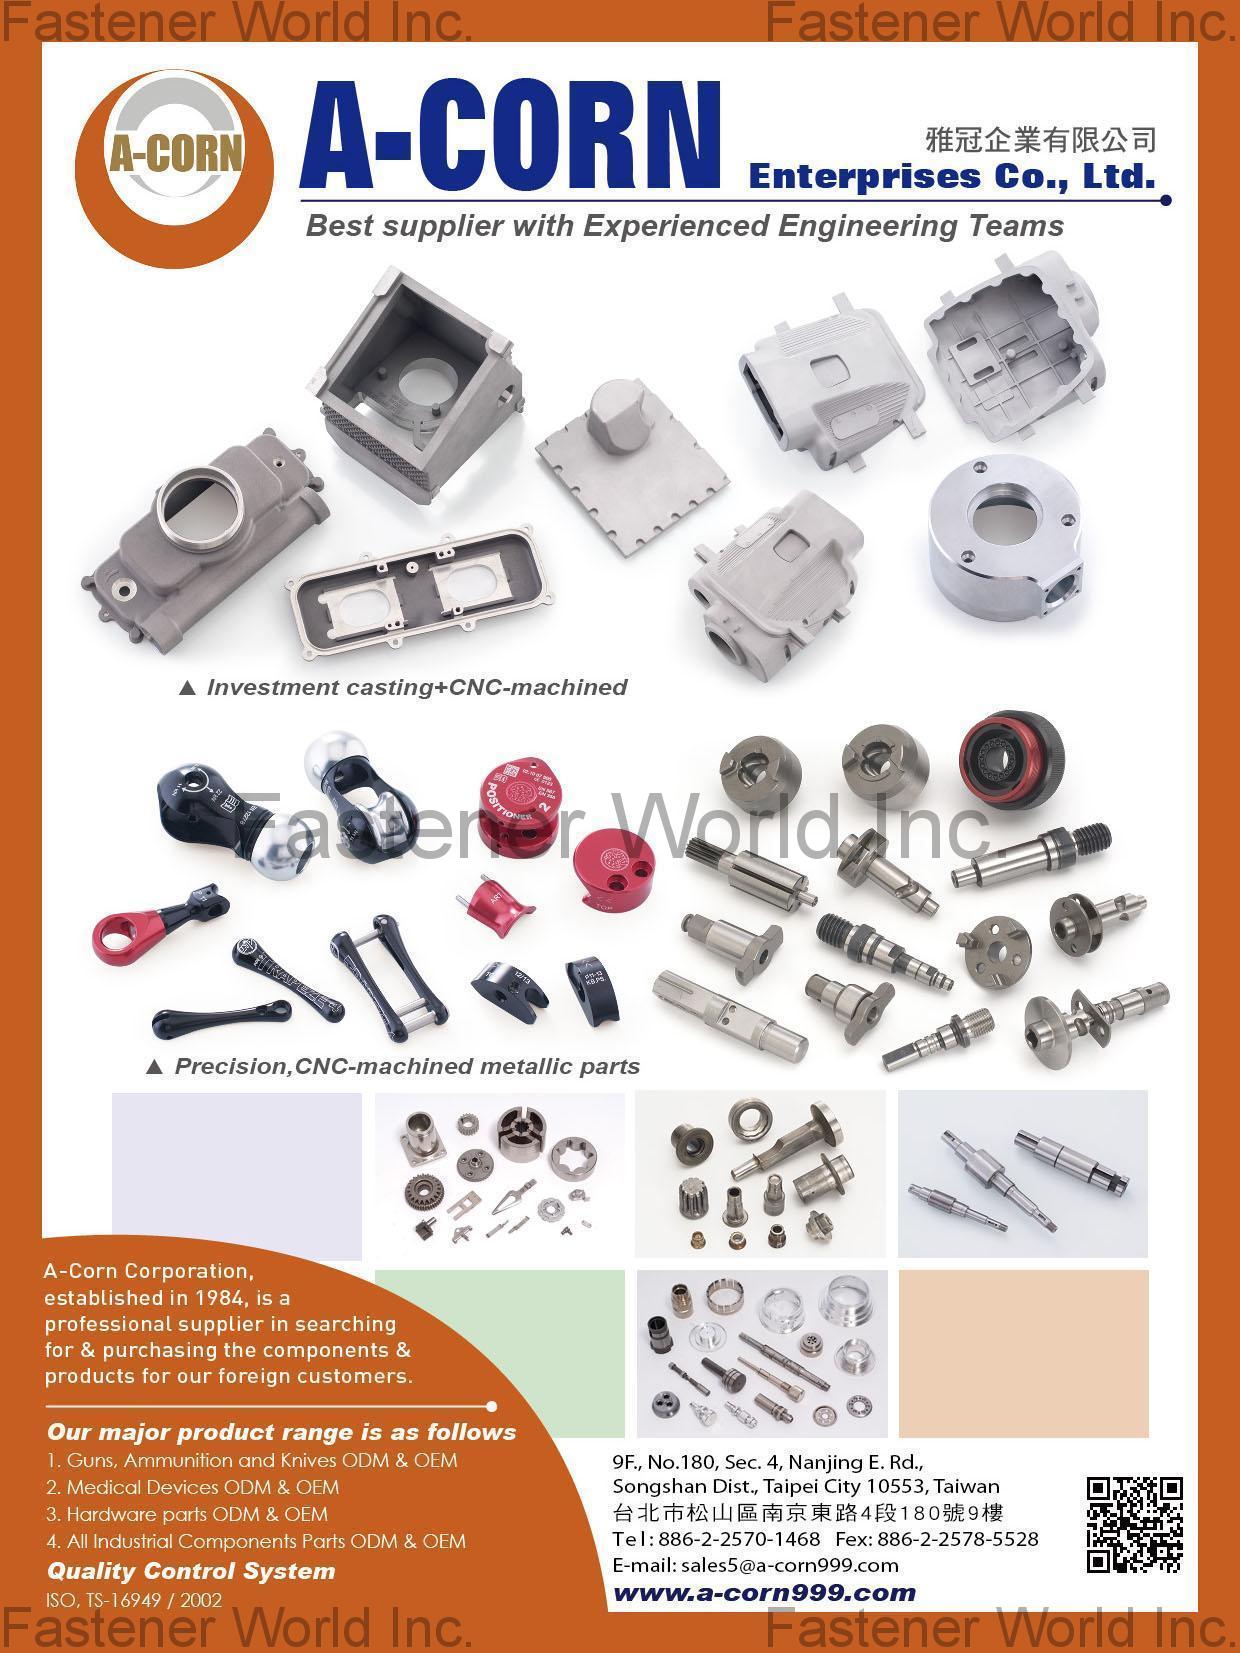 A-CORN ENTERPRISES CO., LTD. , Investment Casting, Cnc-machined, Precision parts , Cnc Machining Parts